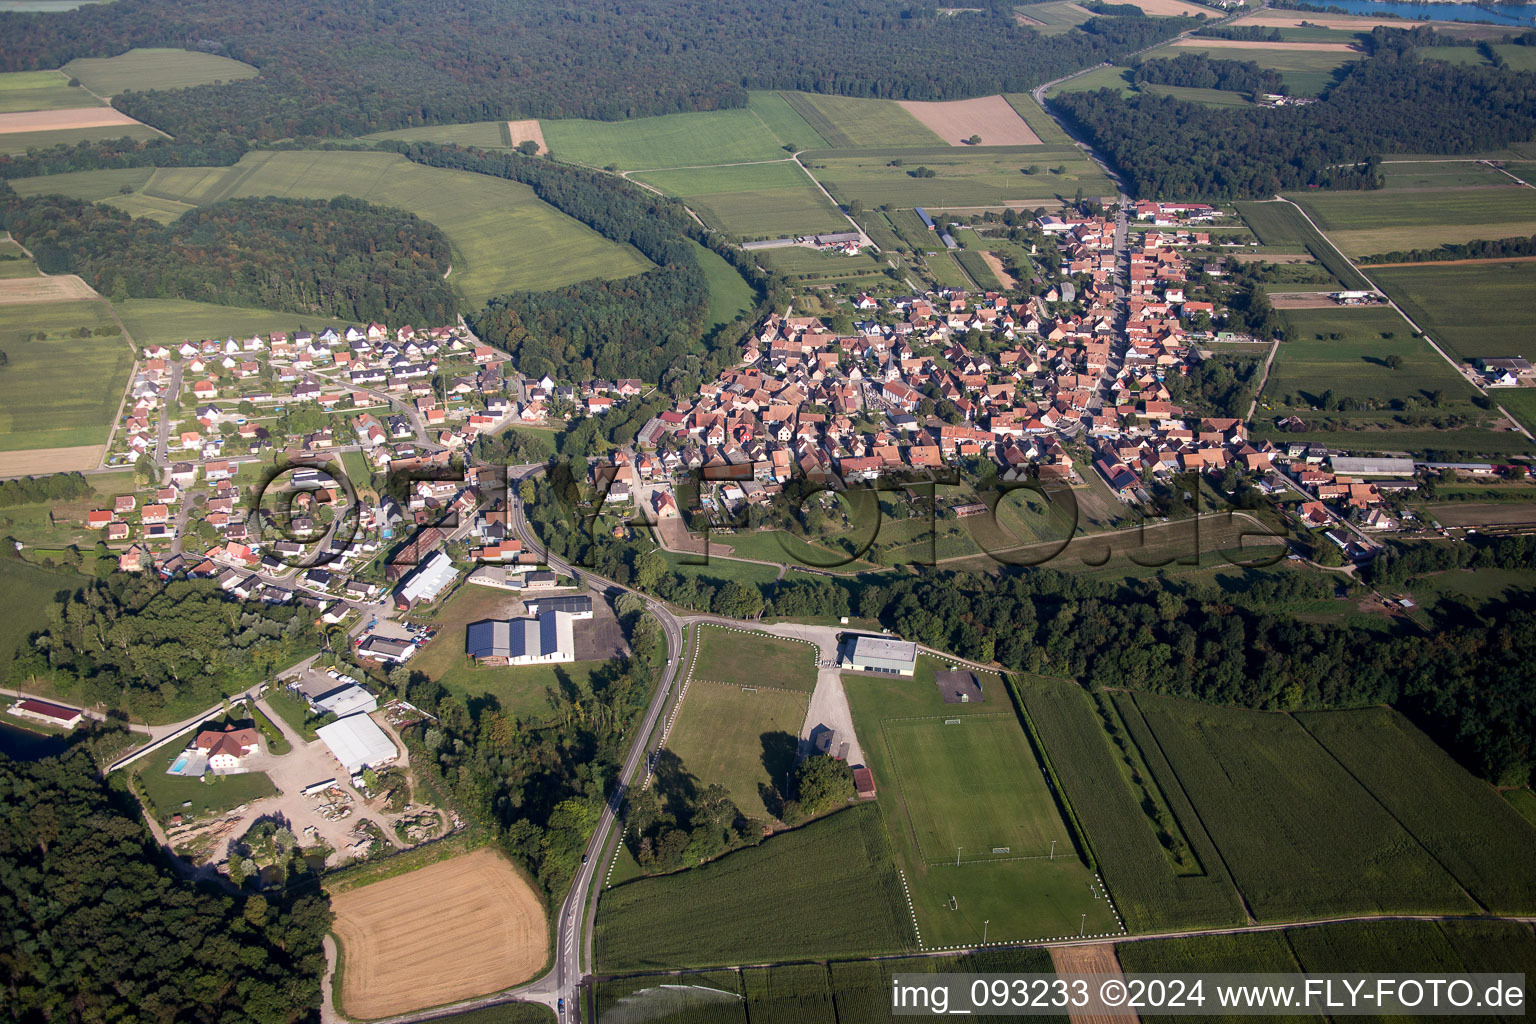 Luftbild von Dorf - Ansicht am Rande von landwirtschaftlichen Feldern und Nutzflächen in Herbsheim in Grand Est im Bundesland Bas-Rhin, Frankreich